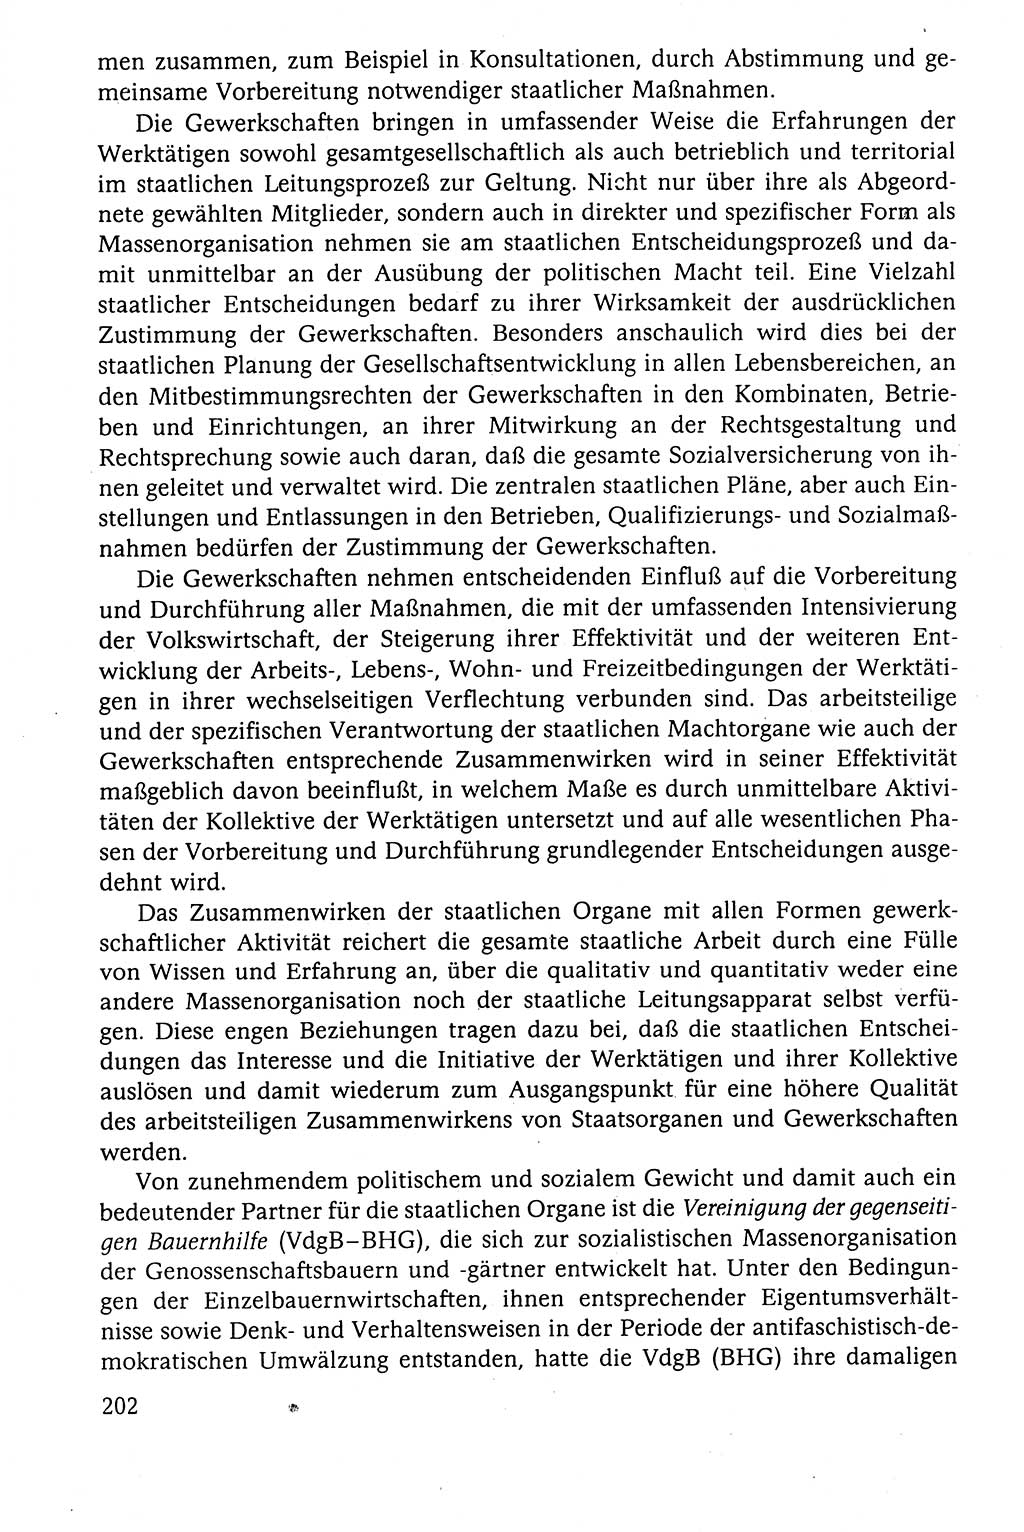 Der Staat im politischen System der DDR (Deutsche Demokratische Republik) 1986, Seite 202 (St. pol. Sys. DDR 1986, S. 202)